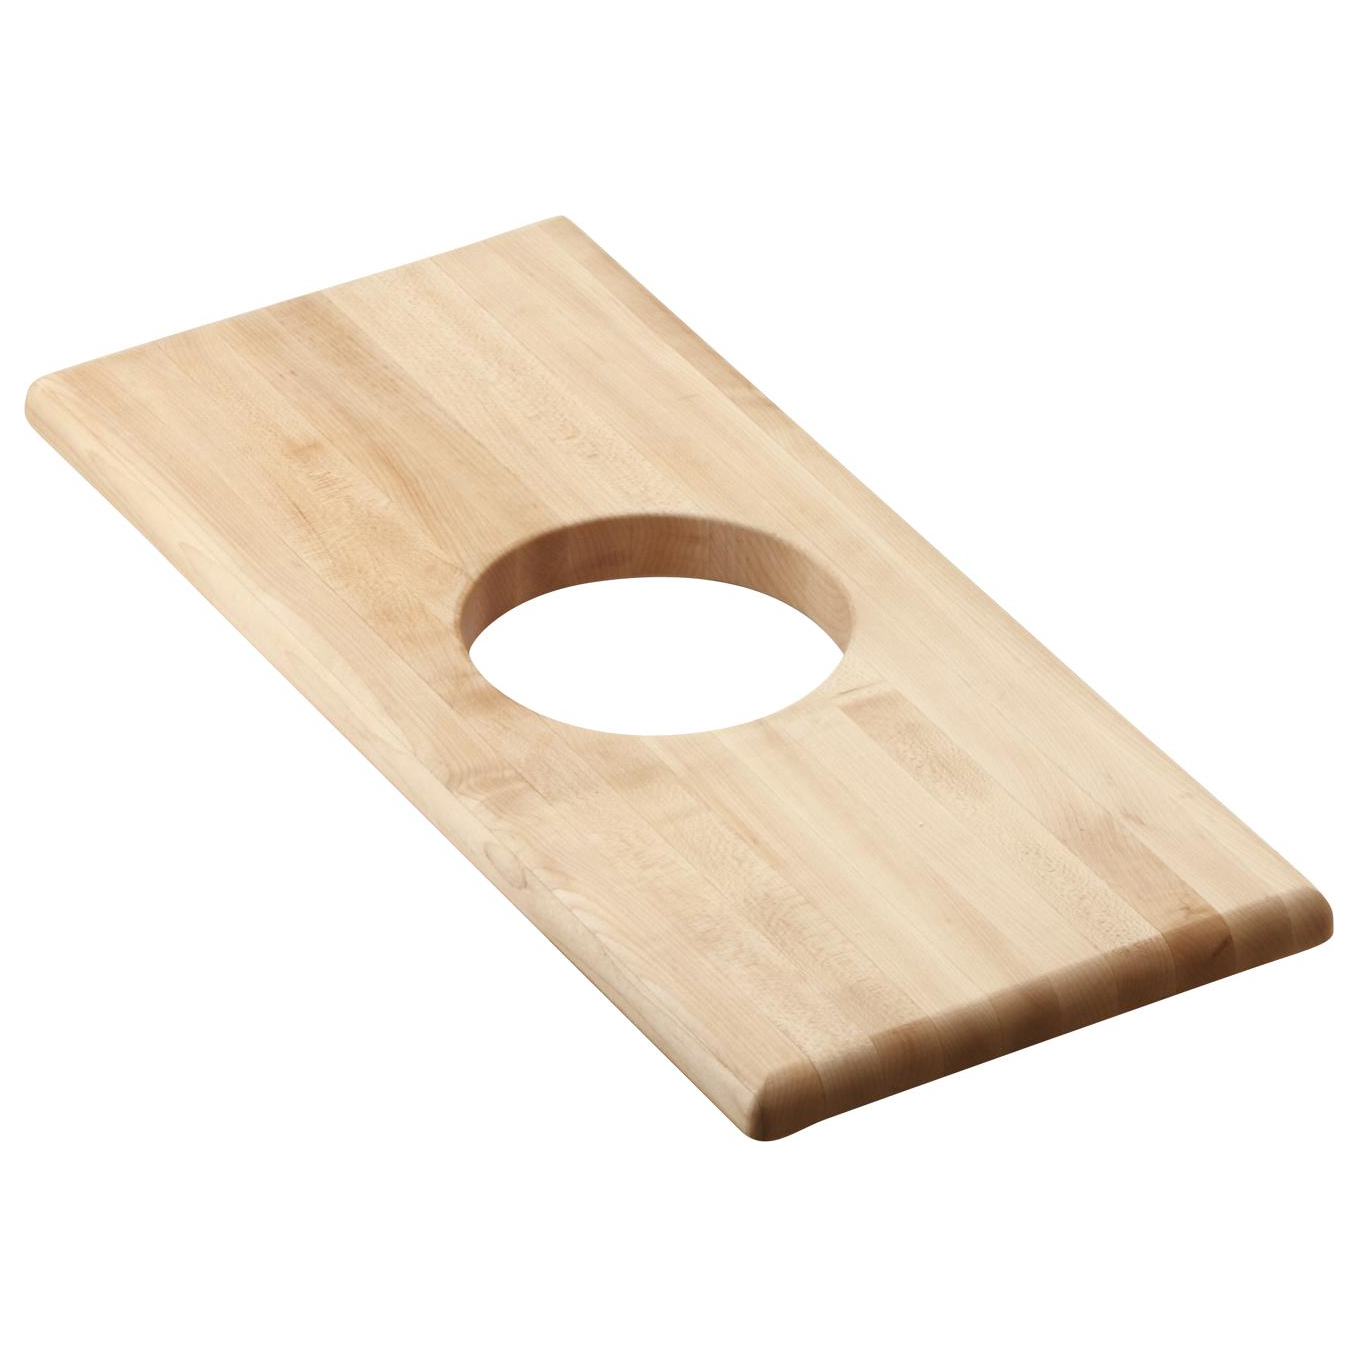 Hardwood 8-1/2x19" Cutting Board